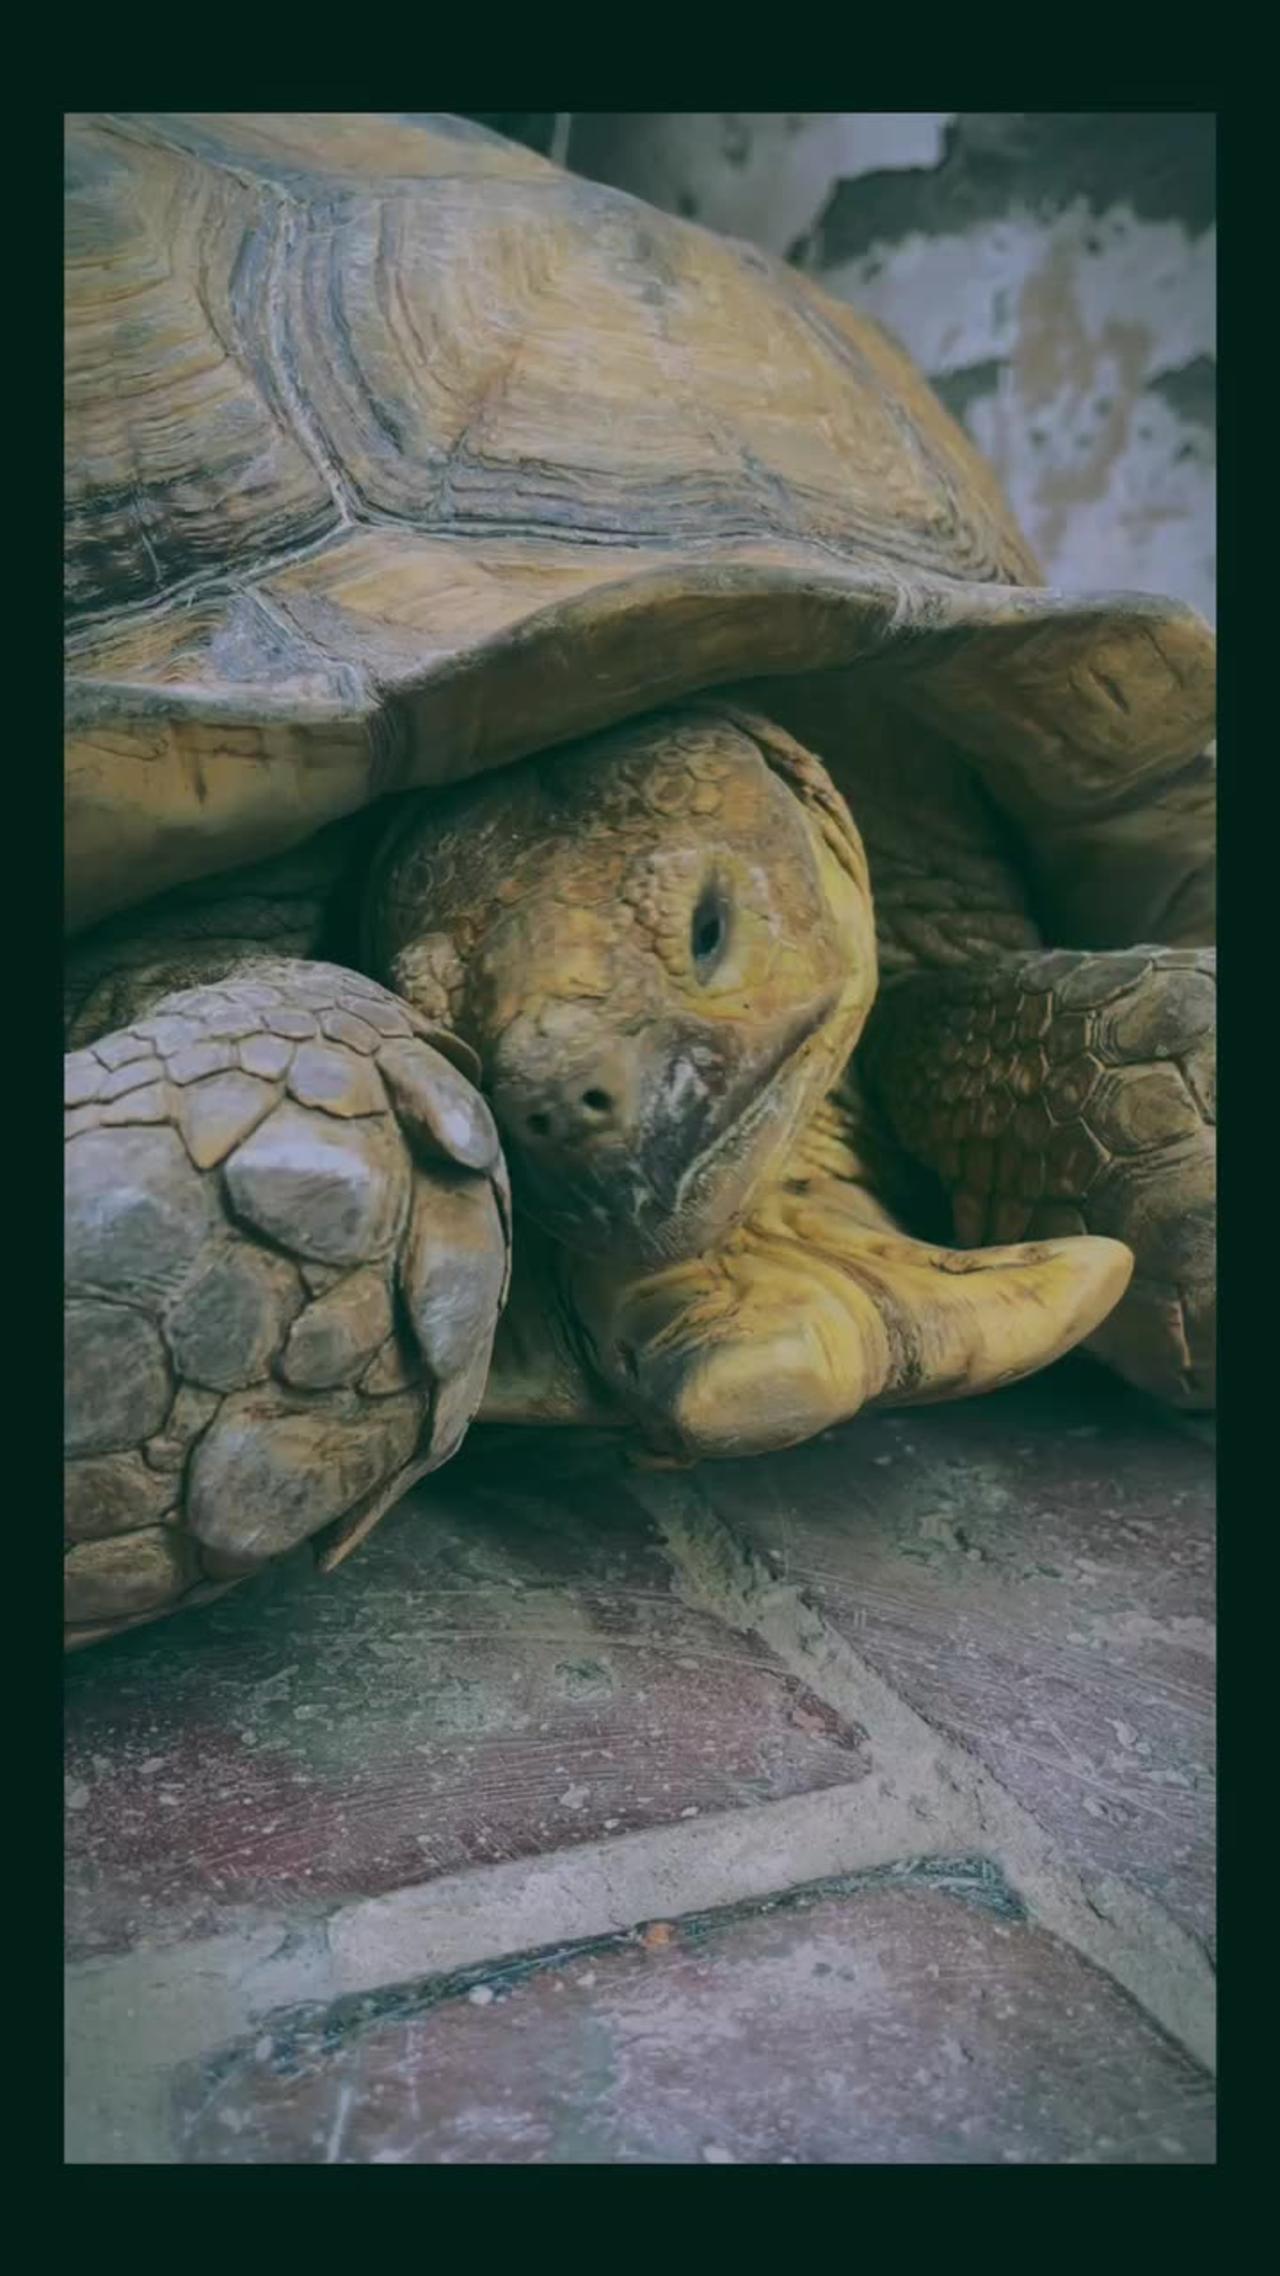 Sammy the Sulcata tortoise